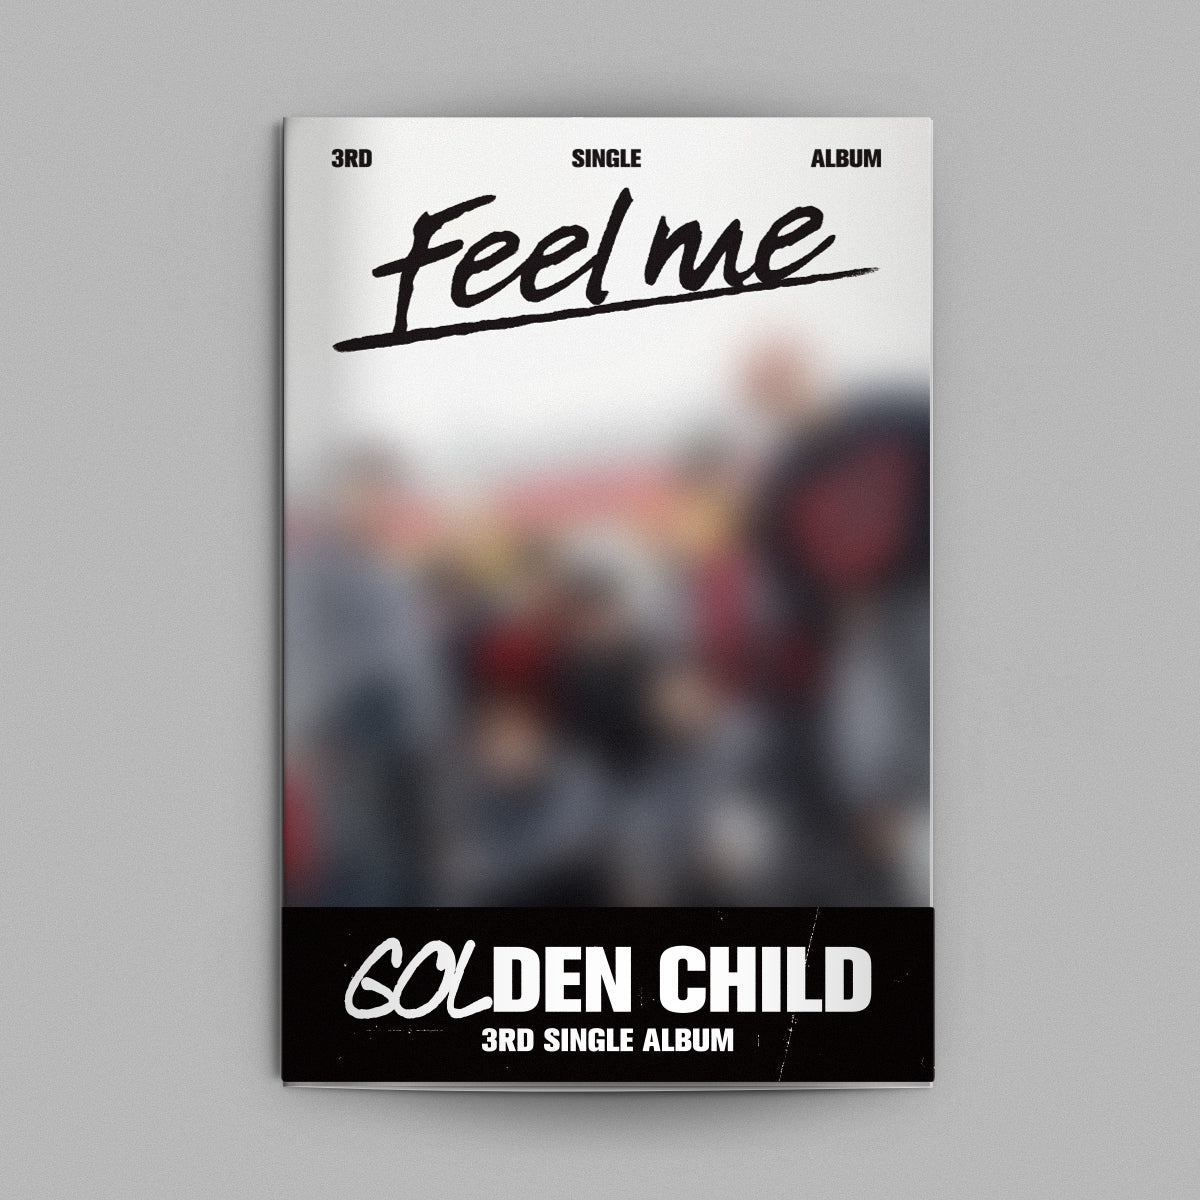 Golden Child - 3rd Single Album Feel me